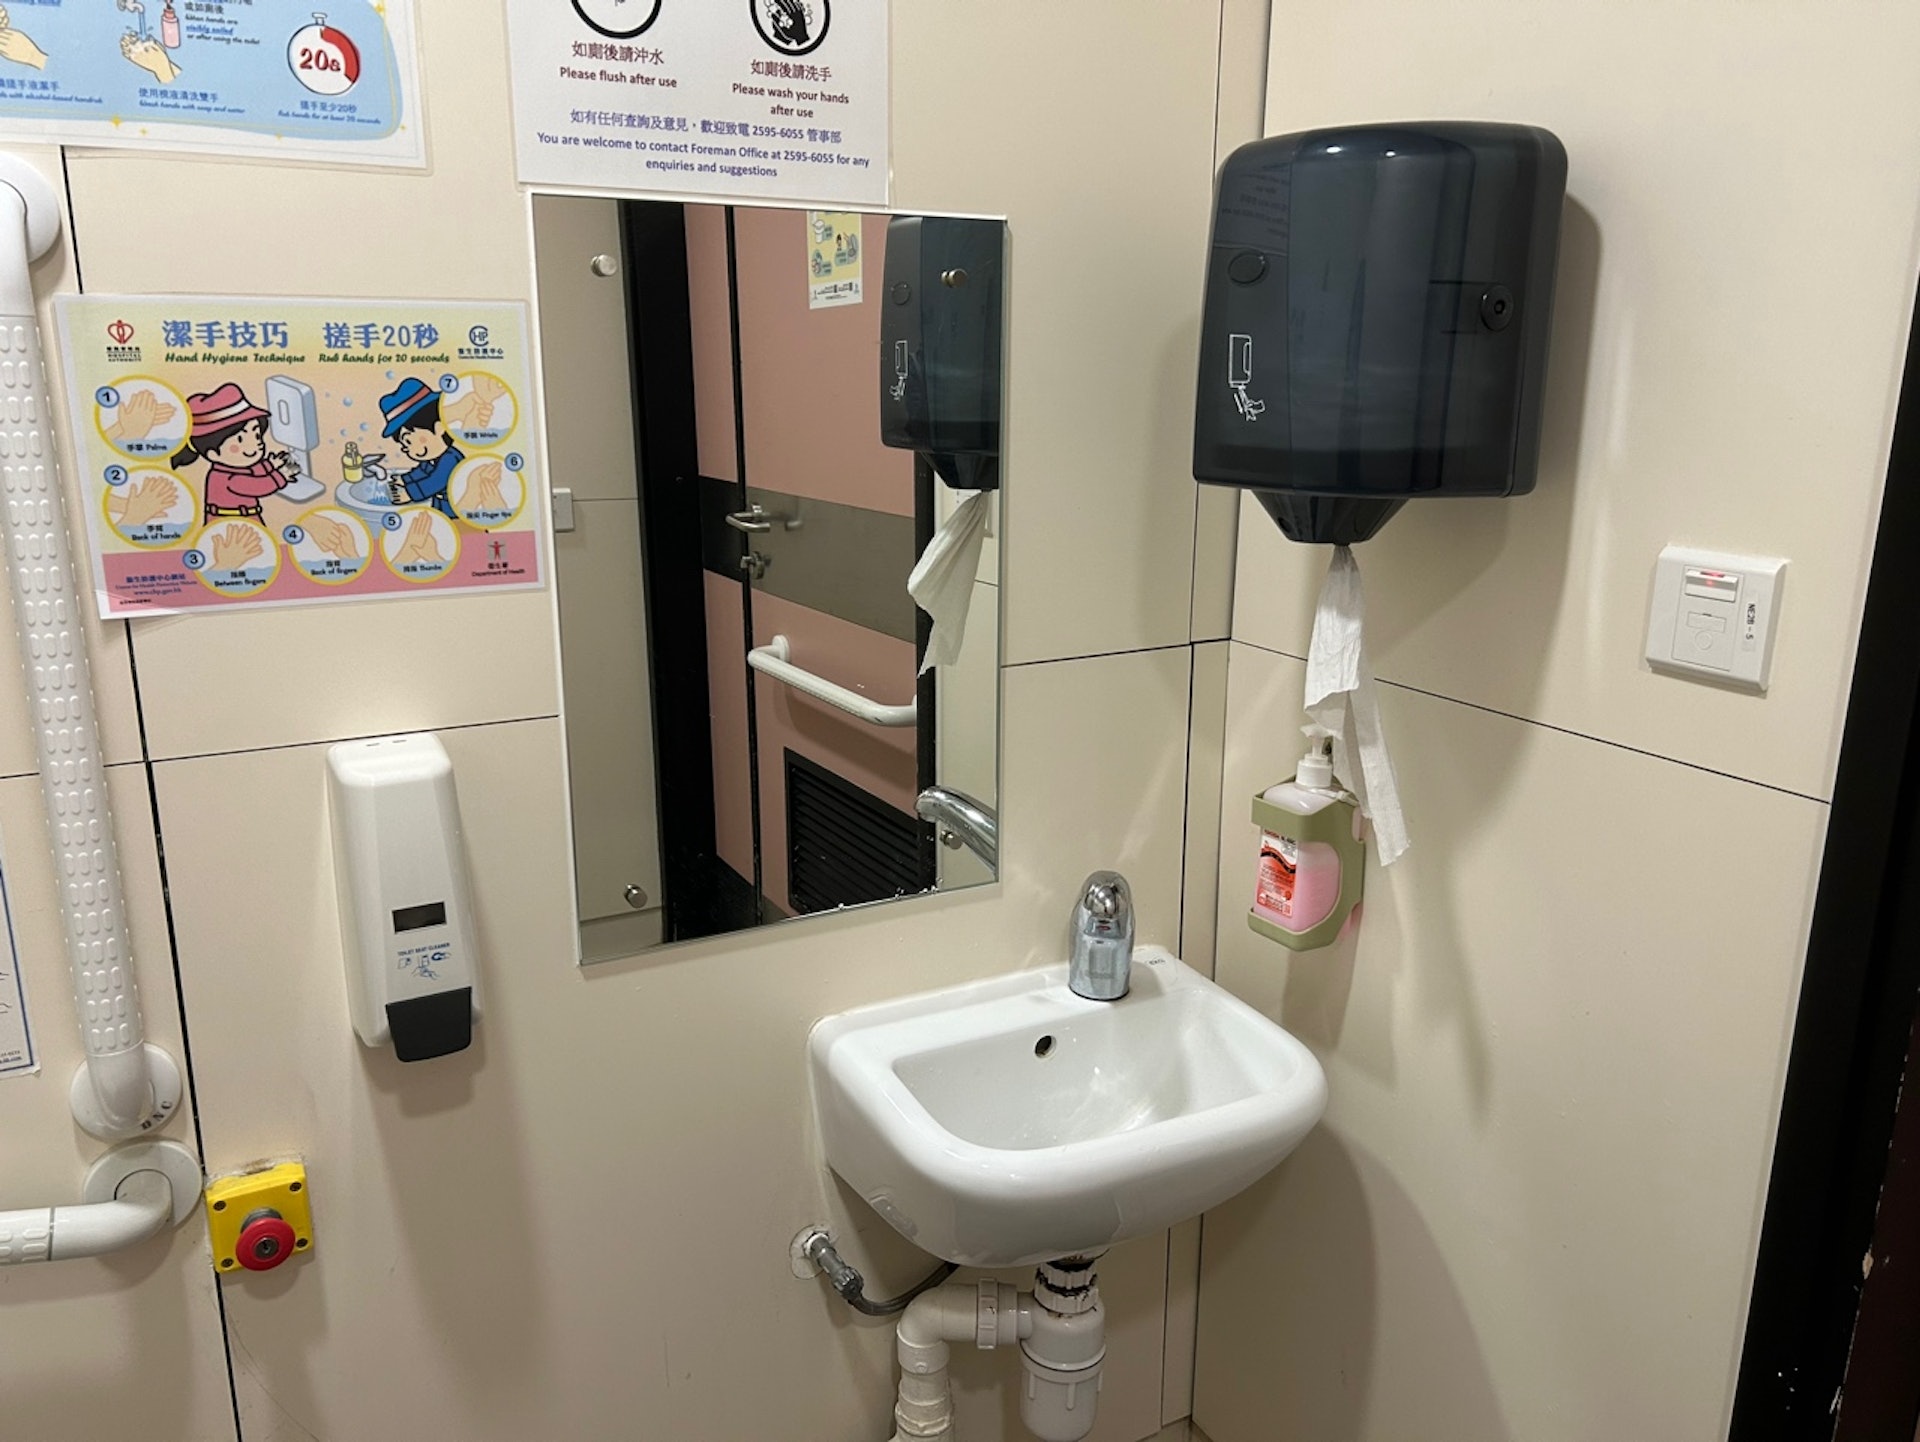 位於一樓屬同類型的無障礙廁所內的緊急求救按鈕放置在扶手下方，緊急按鈕旁未見任何指示或說明使用的字句。（鄧康翹攝）